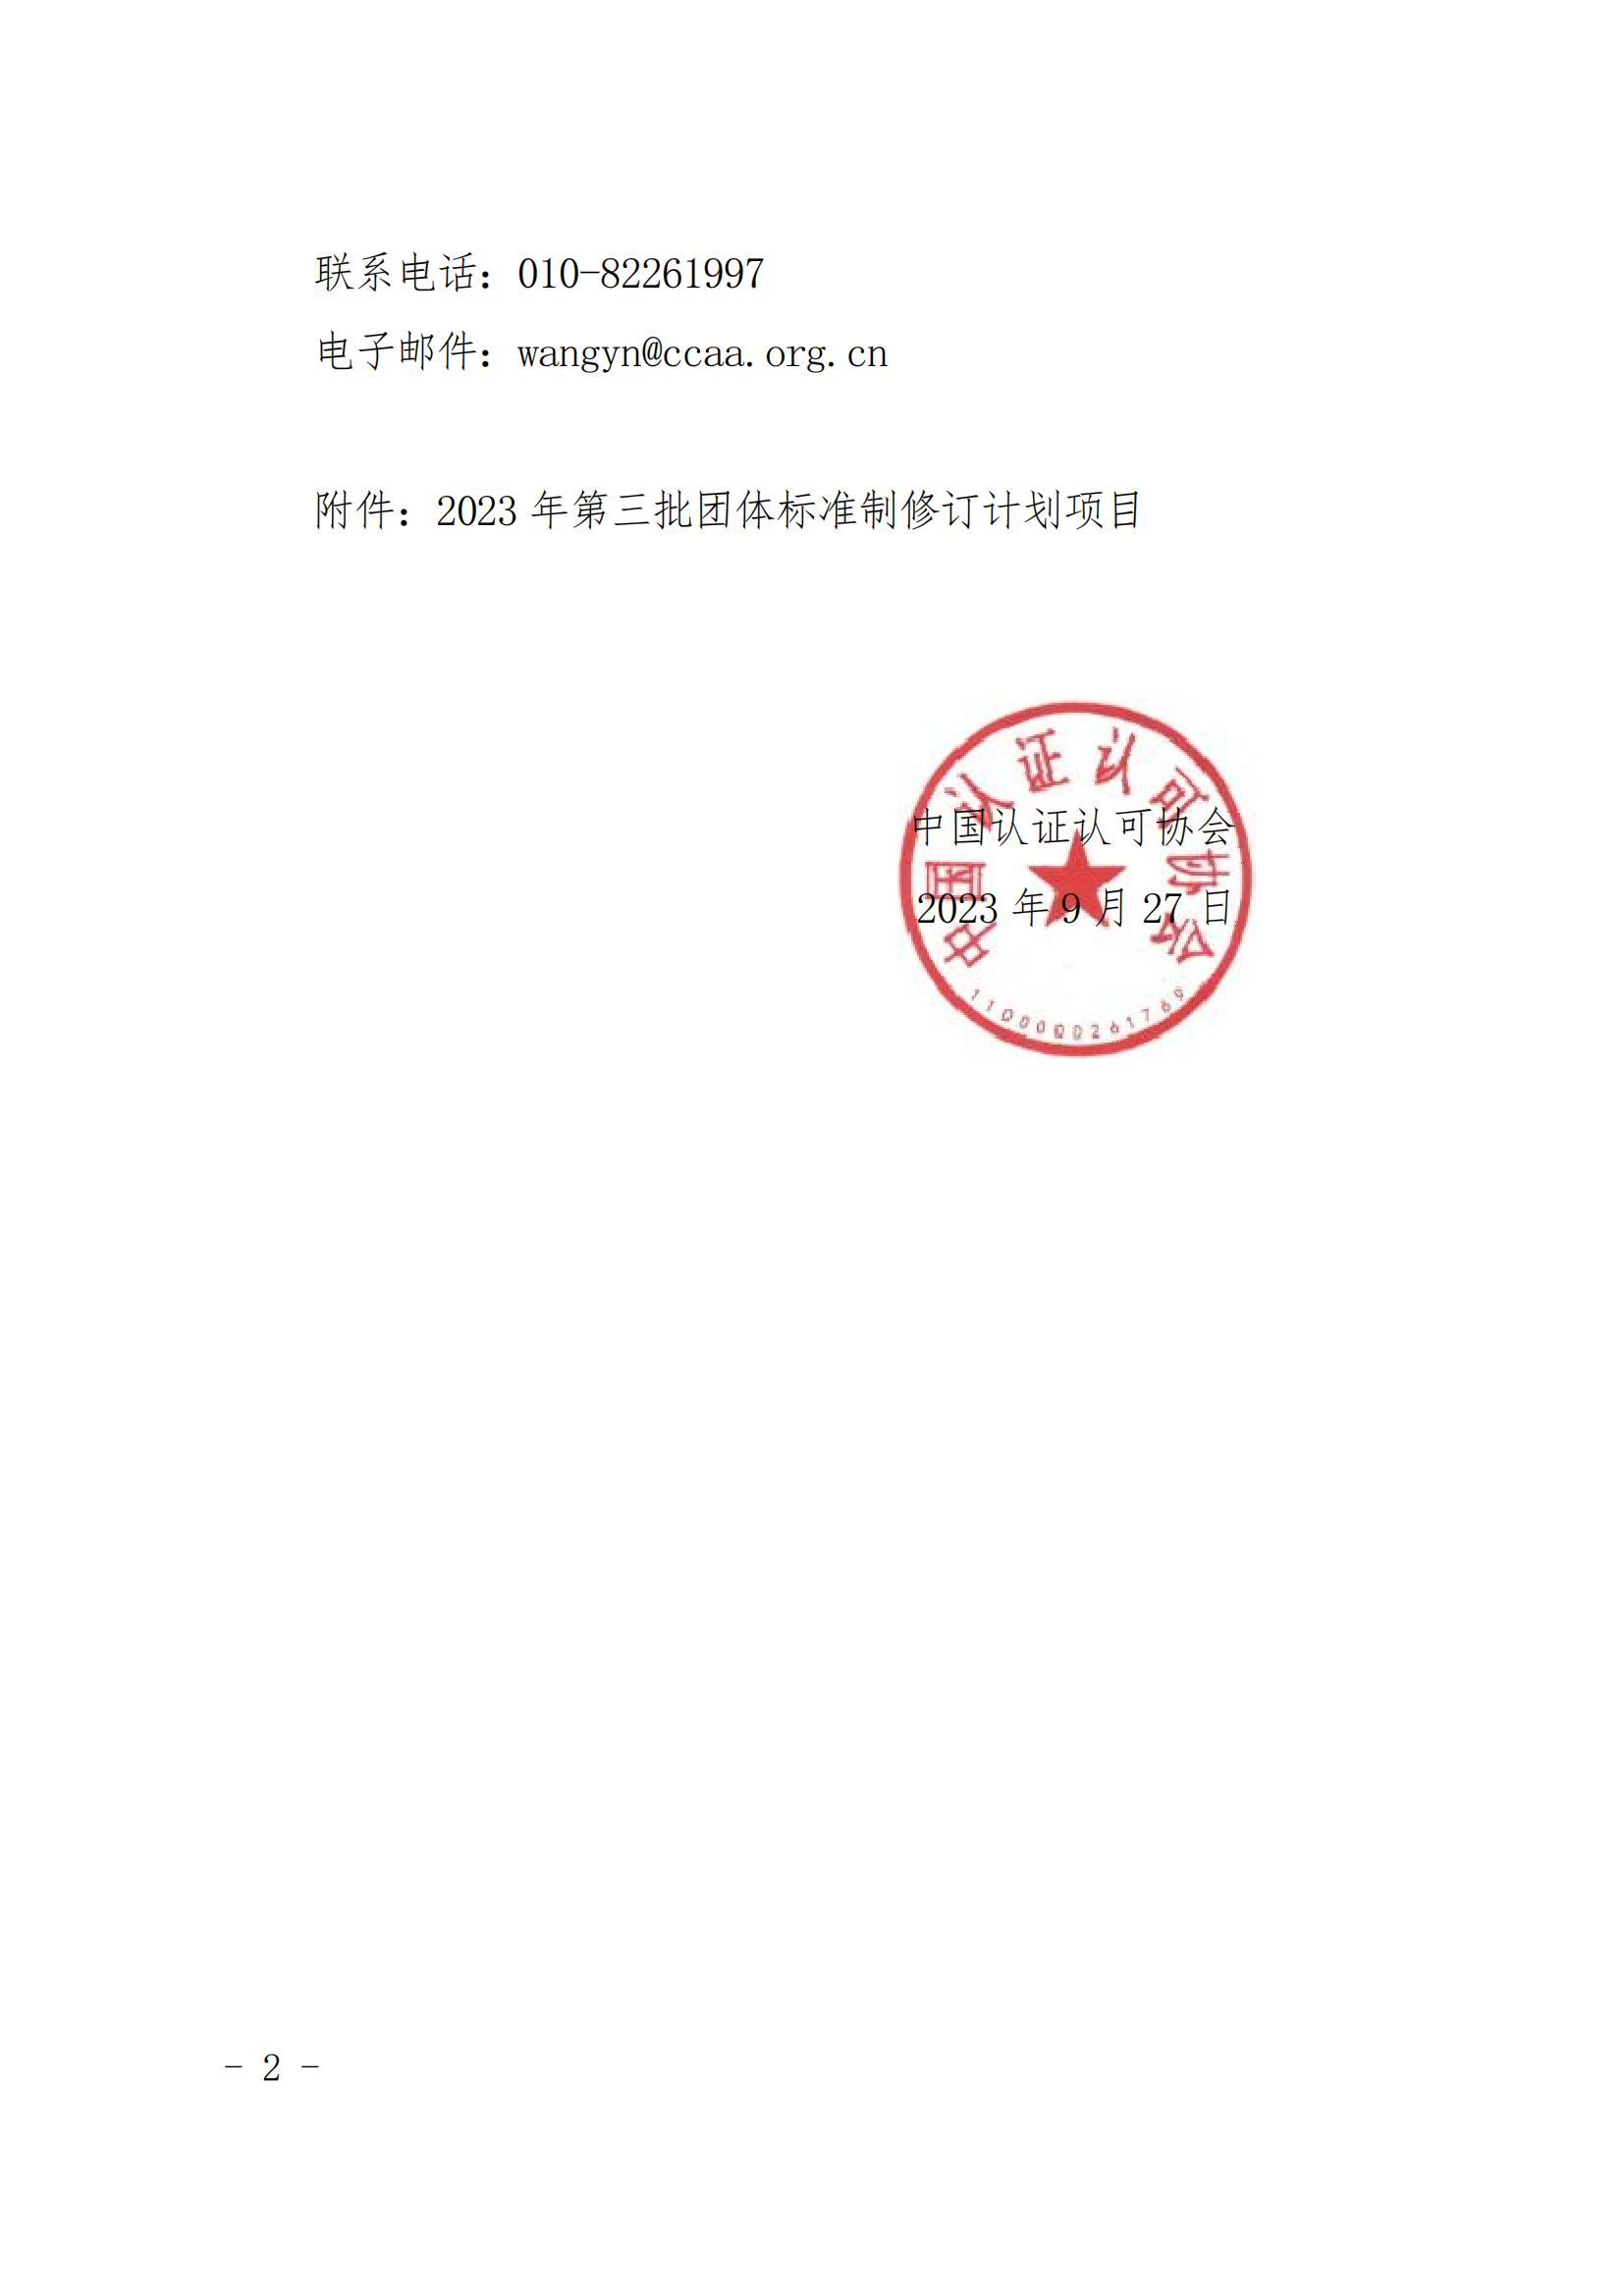 中國認證認可協會團體標準立項的通知_01.jpg